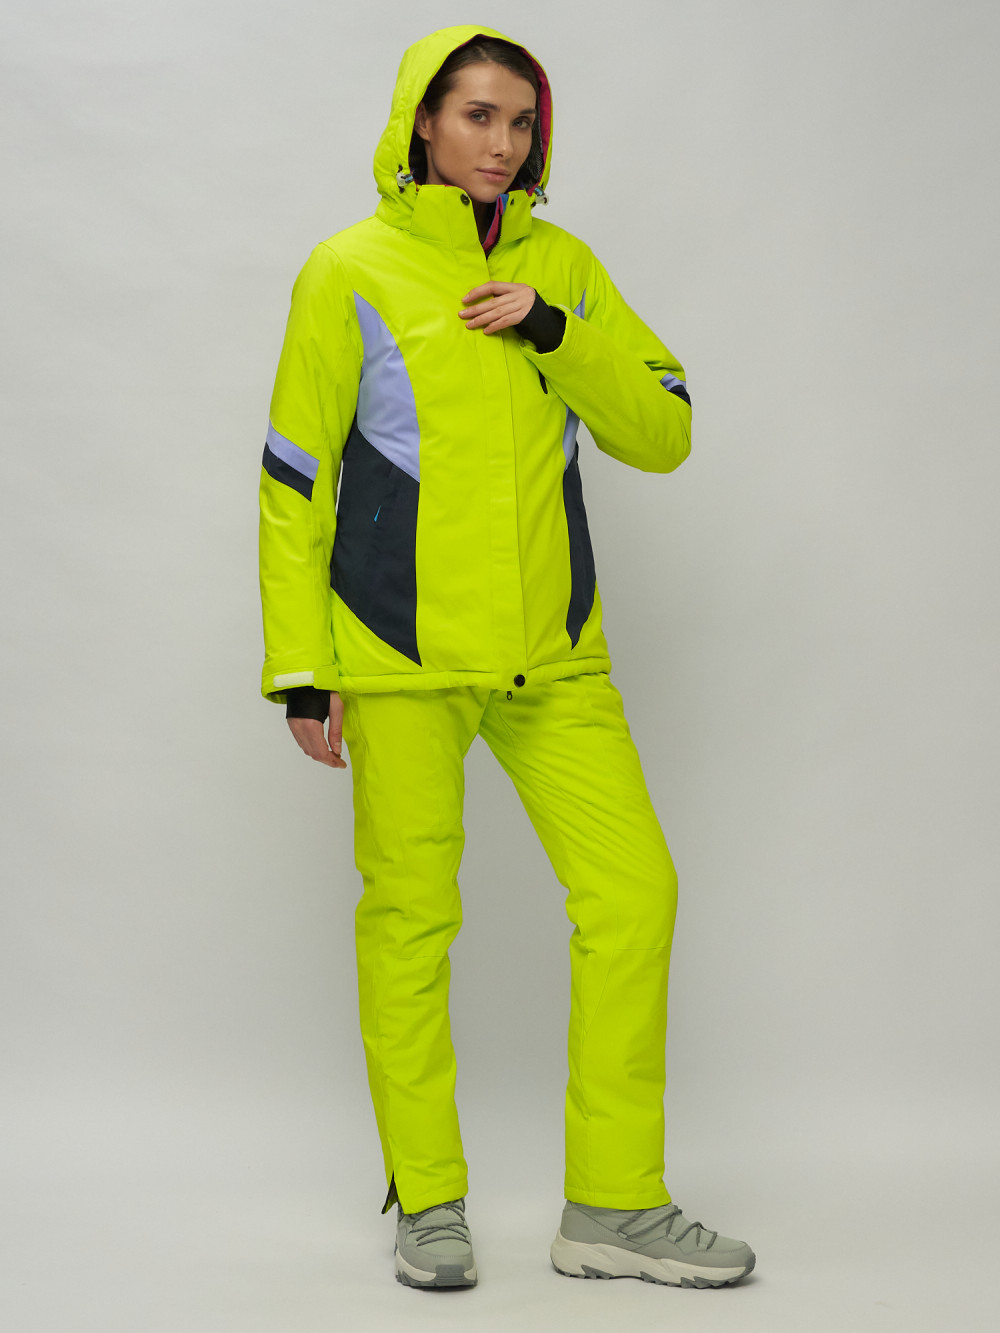 Купить горнолыжный костюм женский оптом от производителя недорого в Москве 02201Sl 1